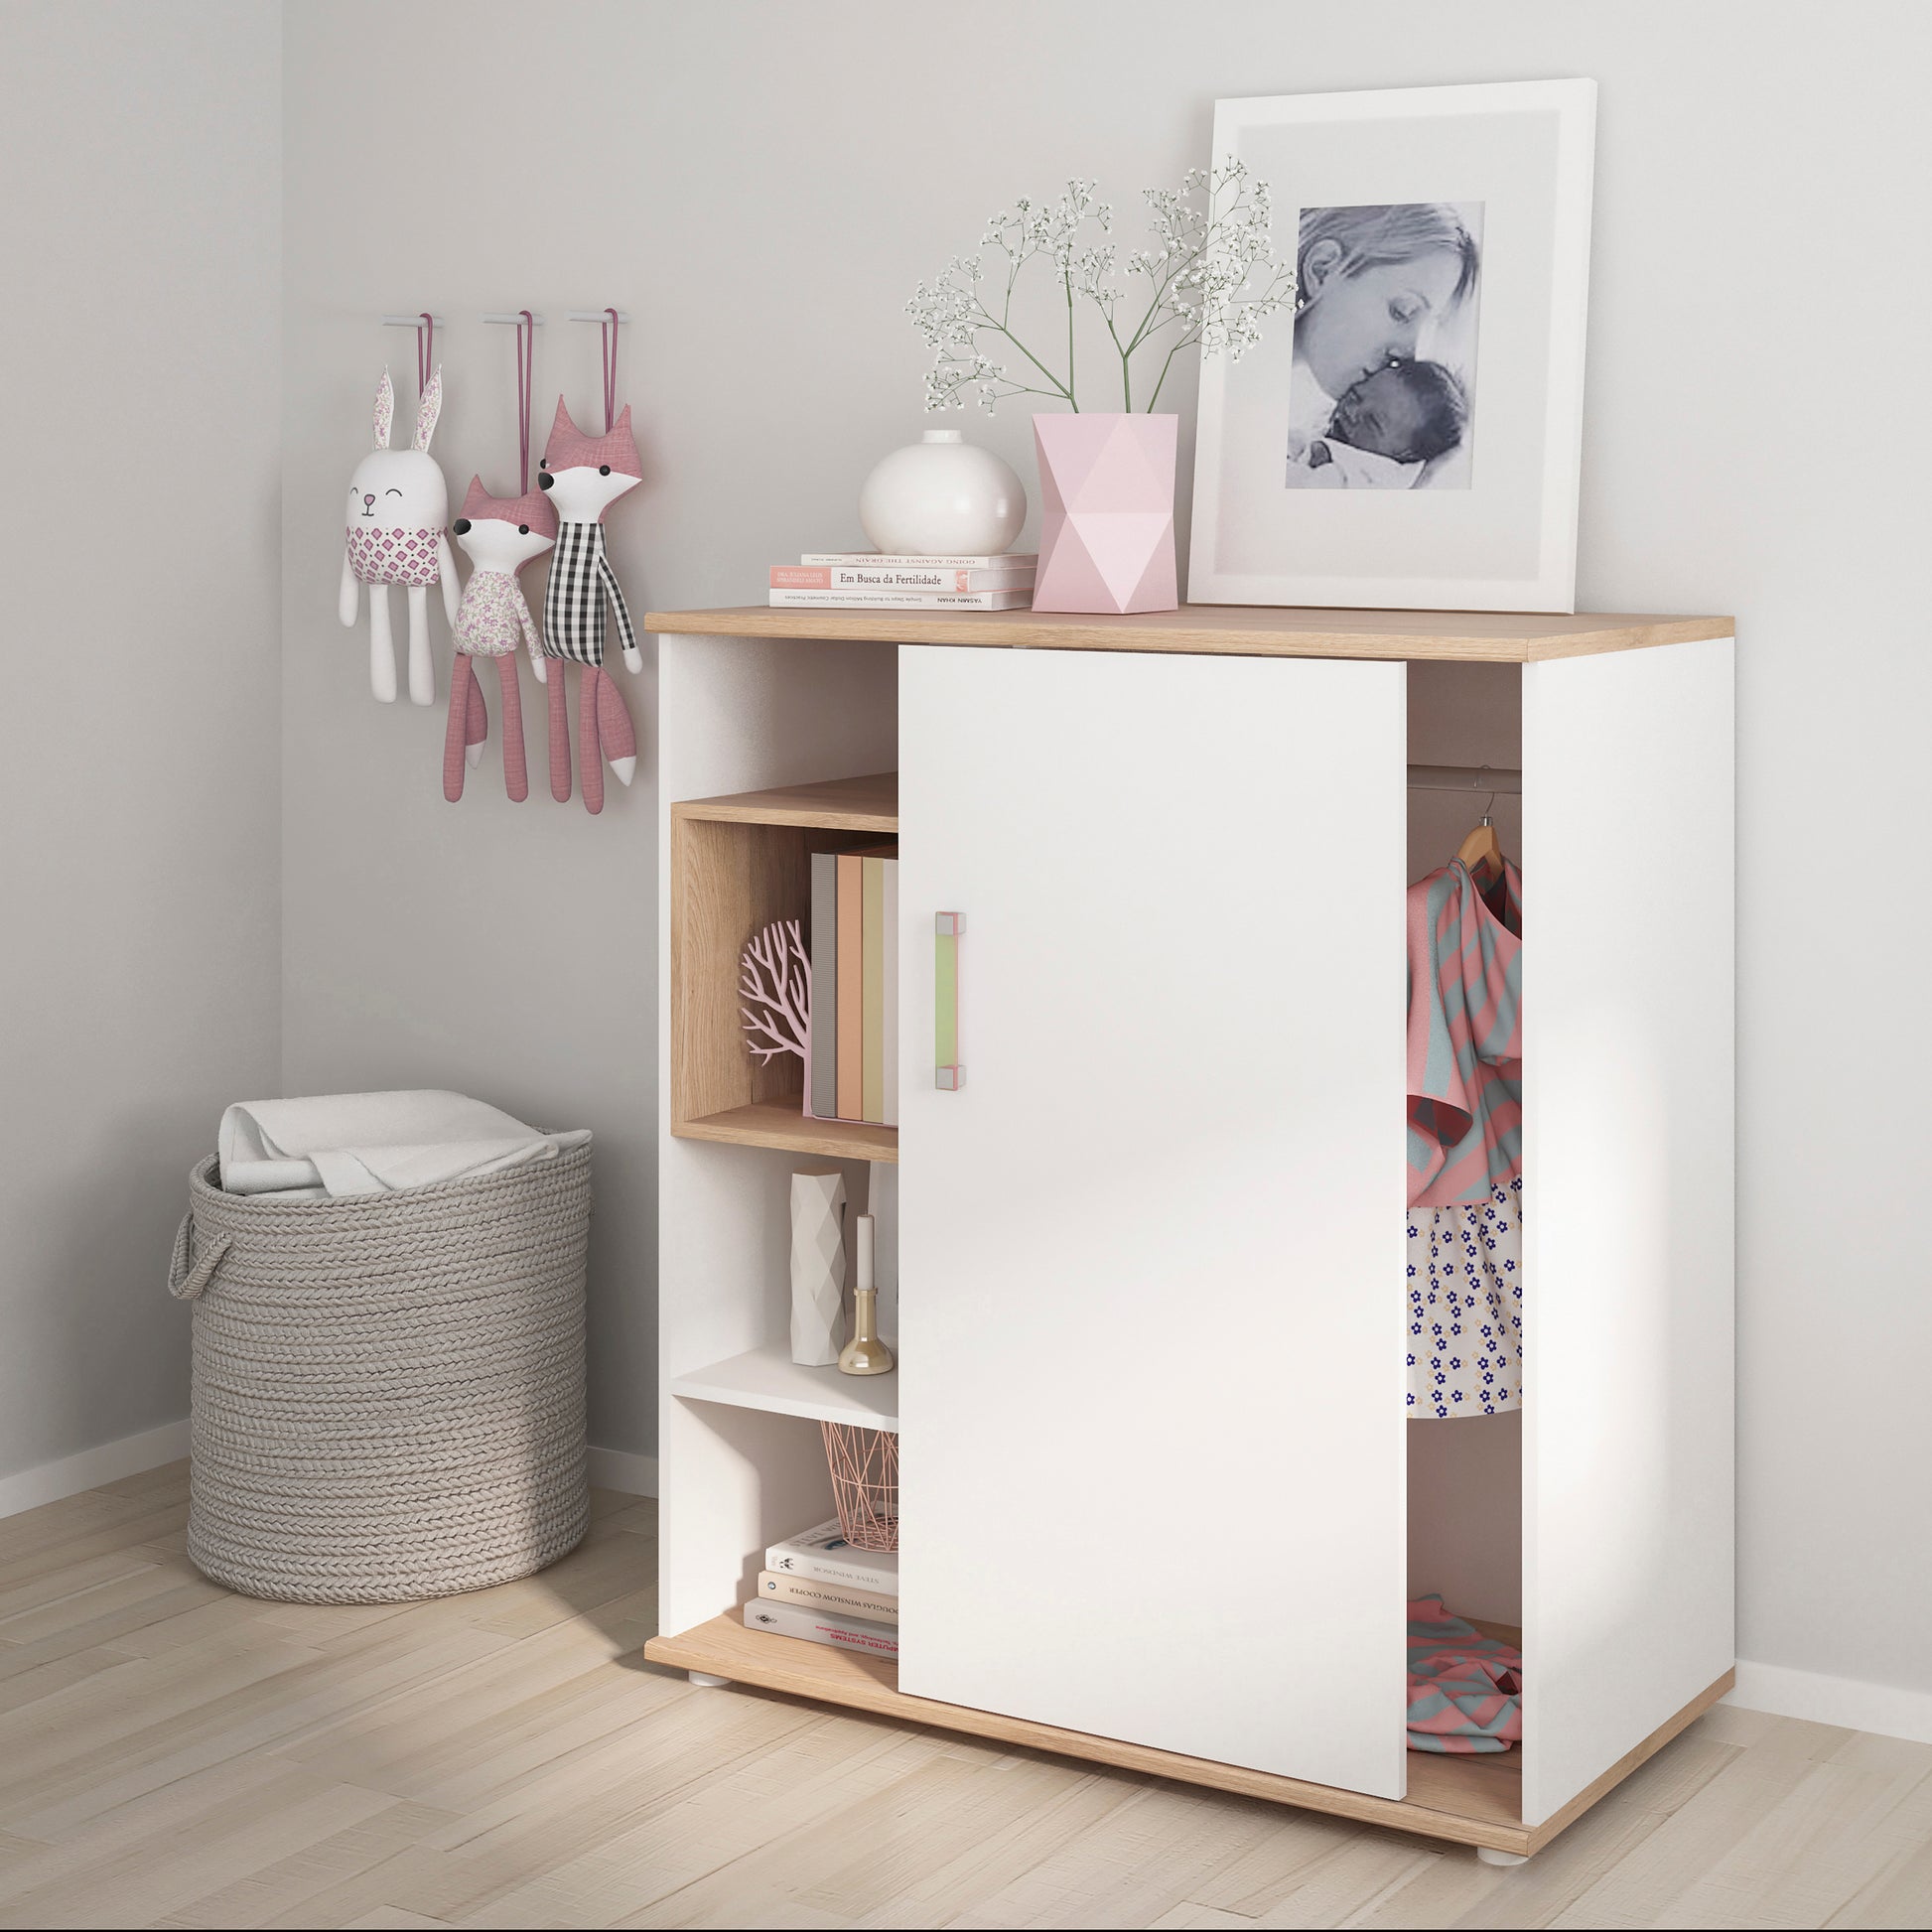 4Kids  Low Cabinet with shelves (Sliding Door) in Light Oak and white High Gloss (lemon handles)